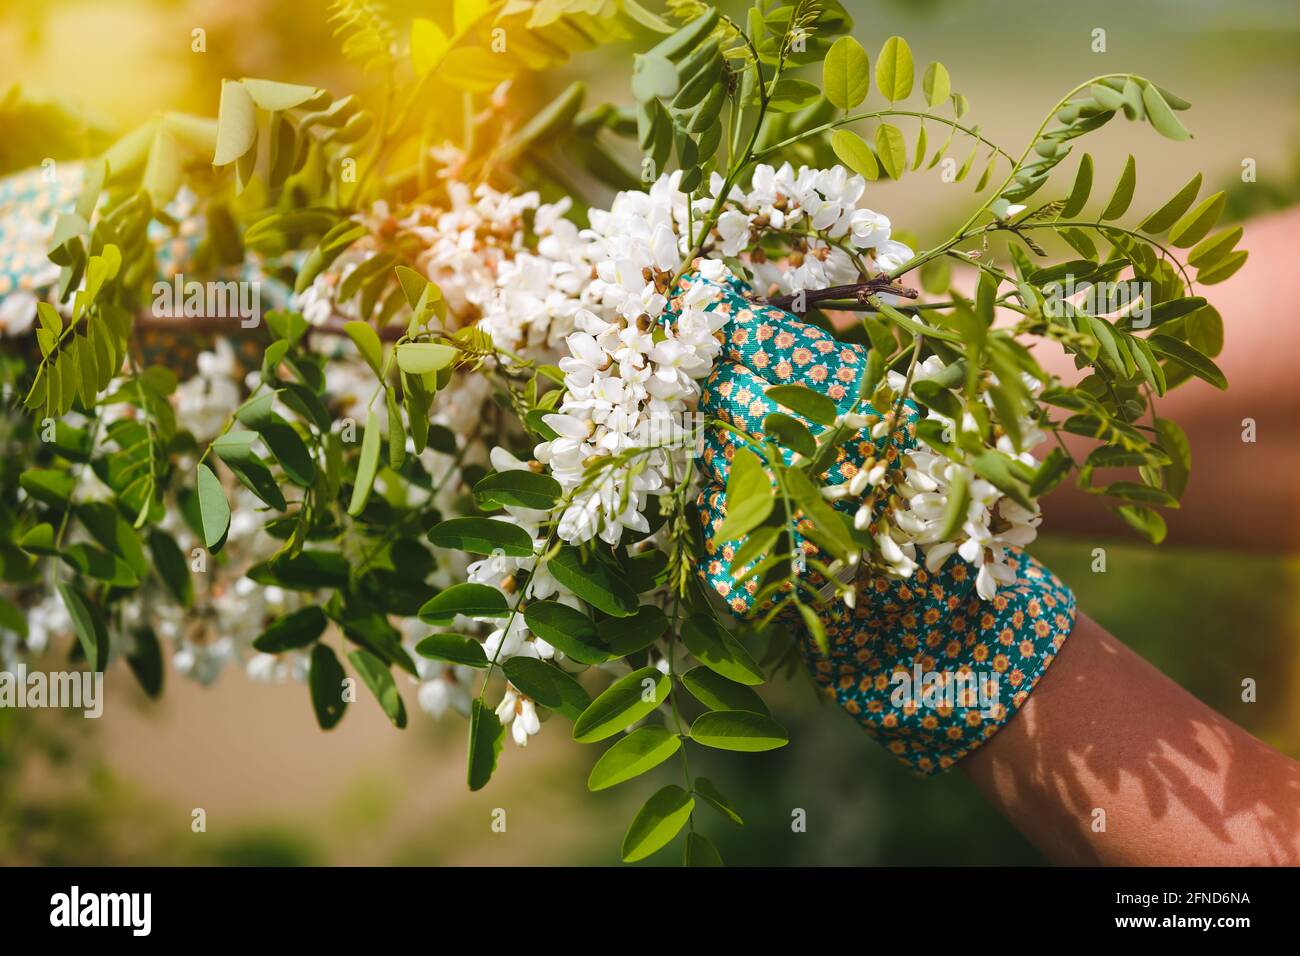 Pflücken Von Akazienblumen. Die Hände der Frau berühren während der Ernte im Frühjahr frische Akazienblüten auf dem Baum, selektiver Fokus Stockfoto